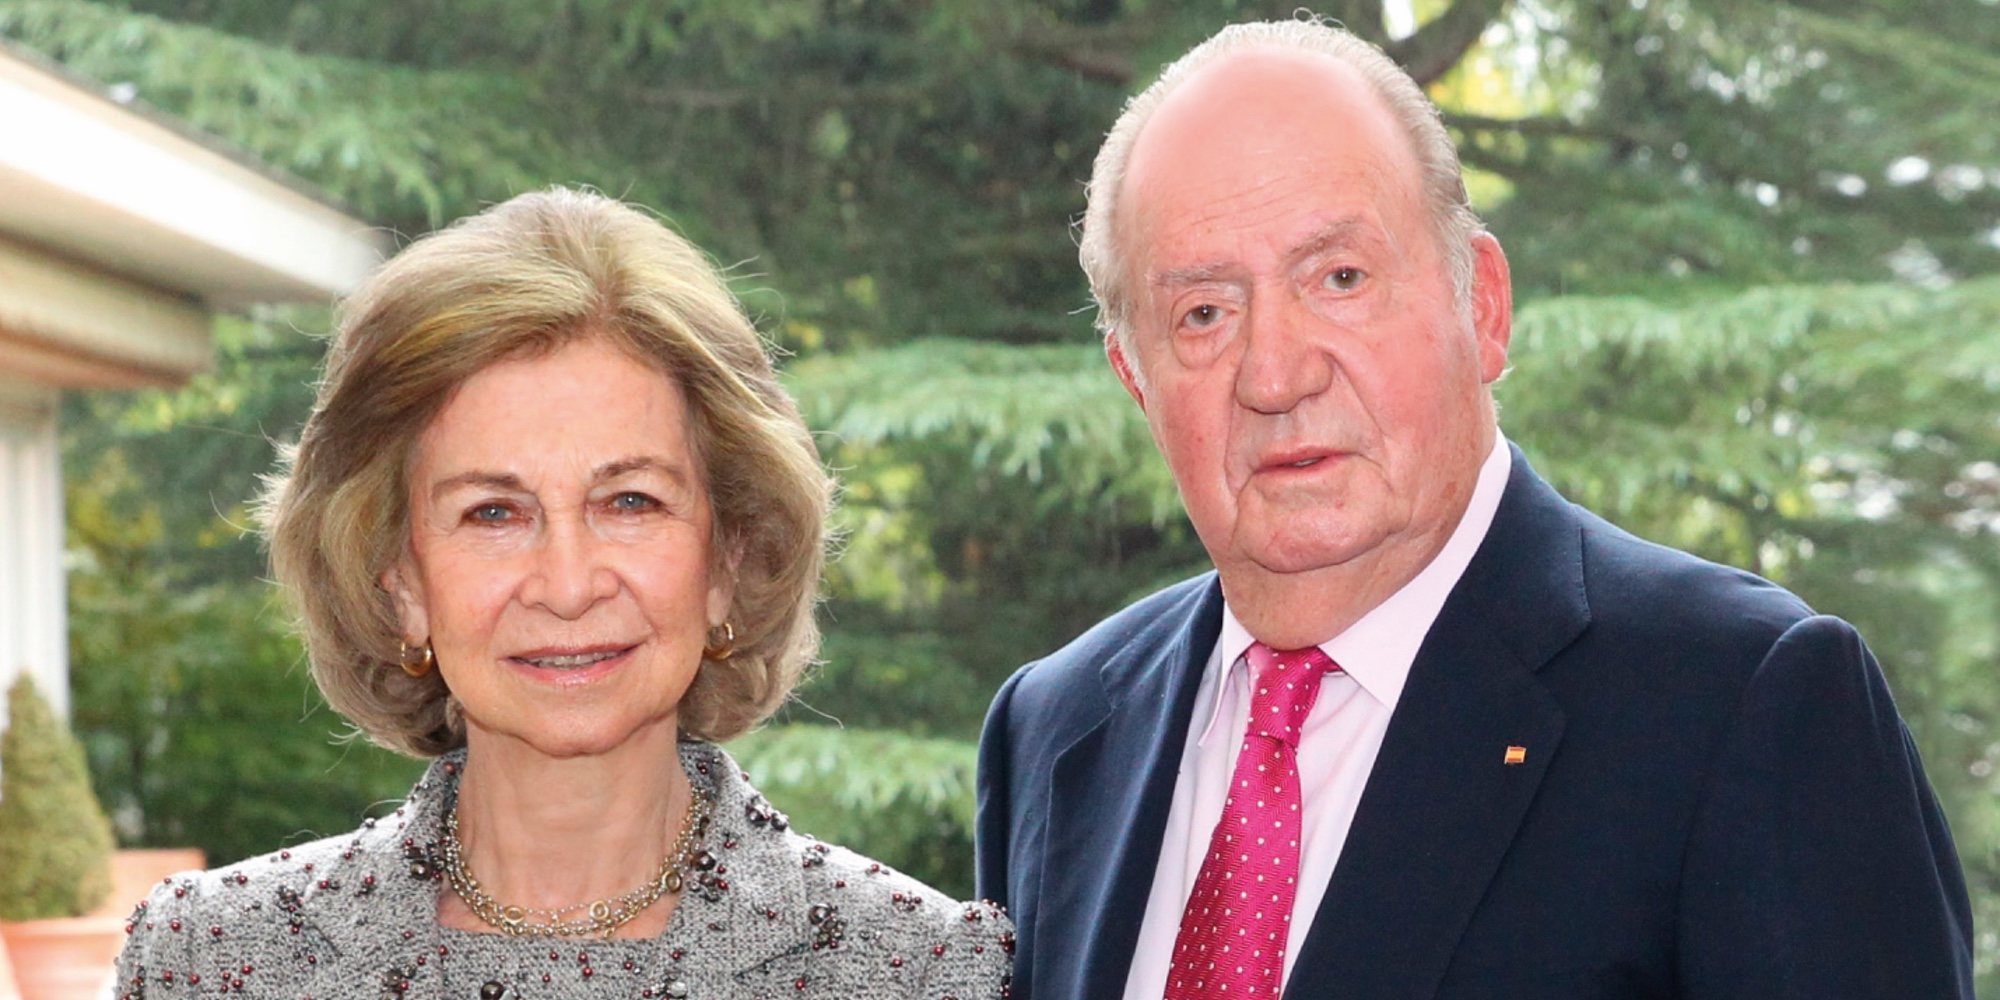 Los Reyes Juan Carlos y Sofía hacen oficial su reconciliación en su felicitación de Navidad 2018